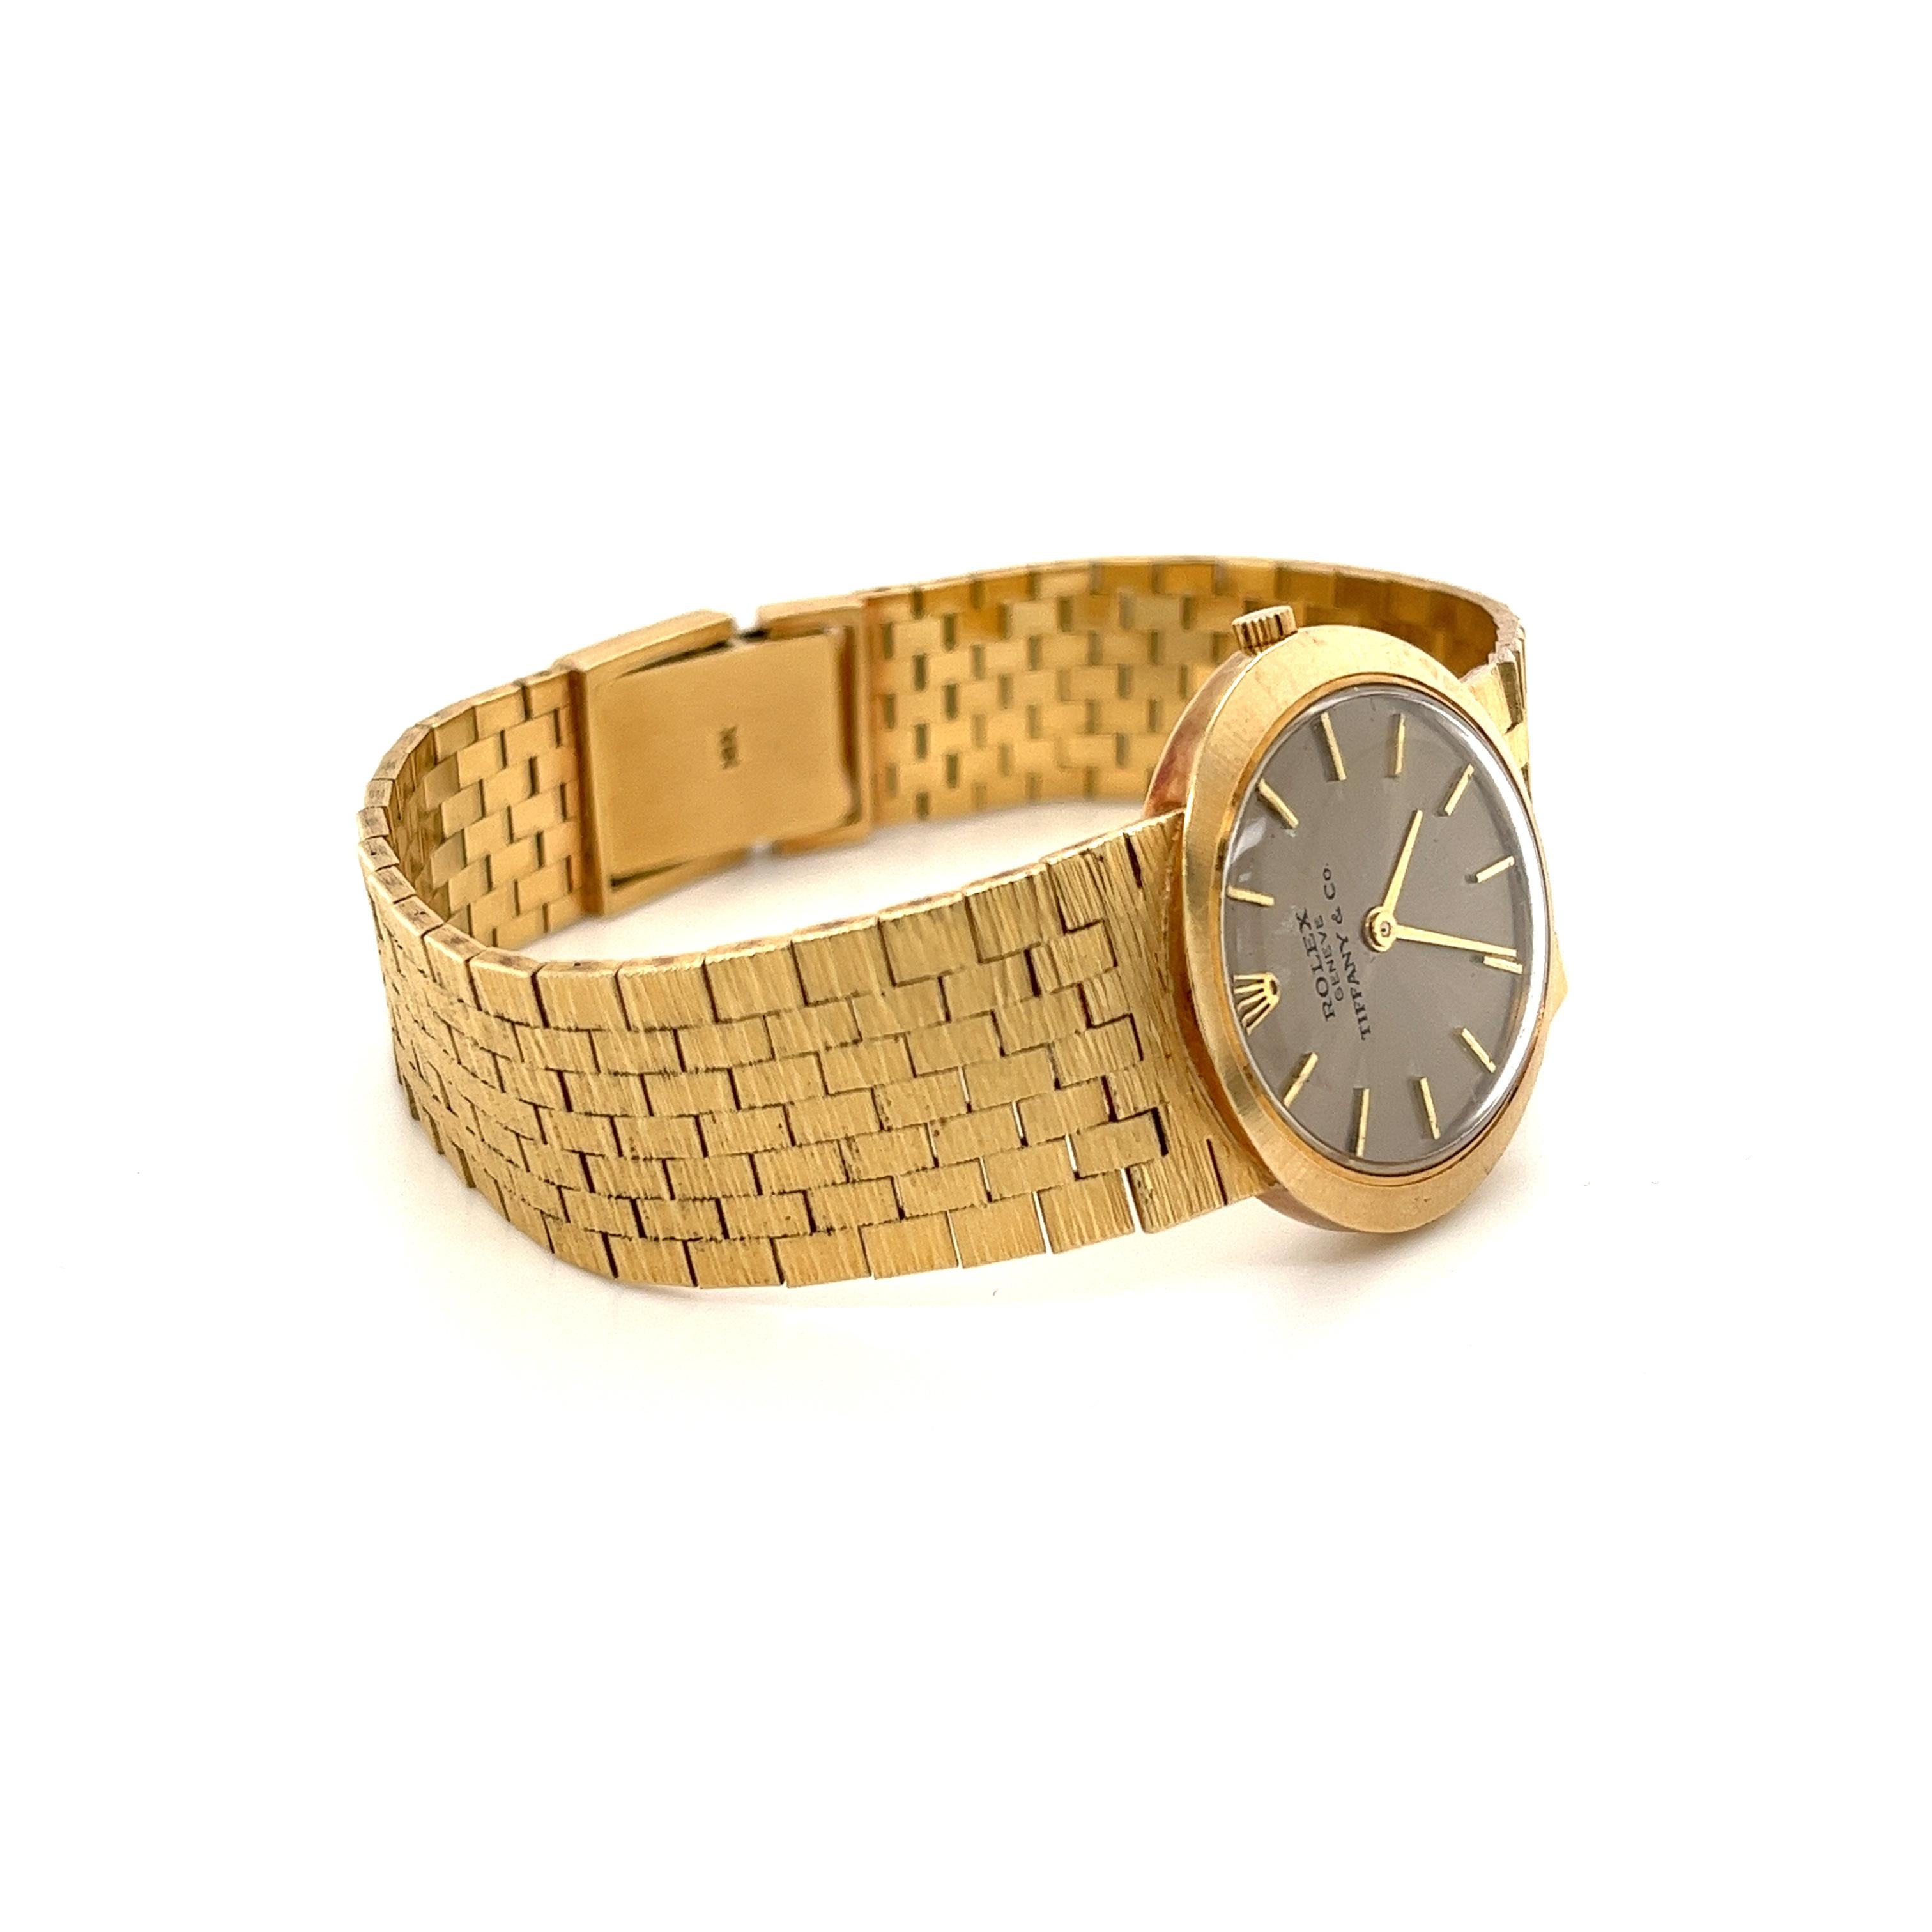 Vintage Rolex swiss-made wristwatch for Tiffany & Co,. Fabriqué à la main avec un bracelet intégral en or jaune massif 14k. Idéal pour le collectionneur de montres chevronné et parfait pour ceux qui sont à la recherche d'une montre de marque vintage